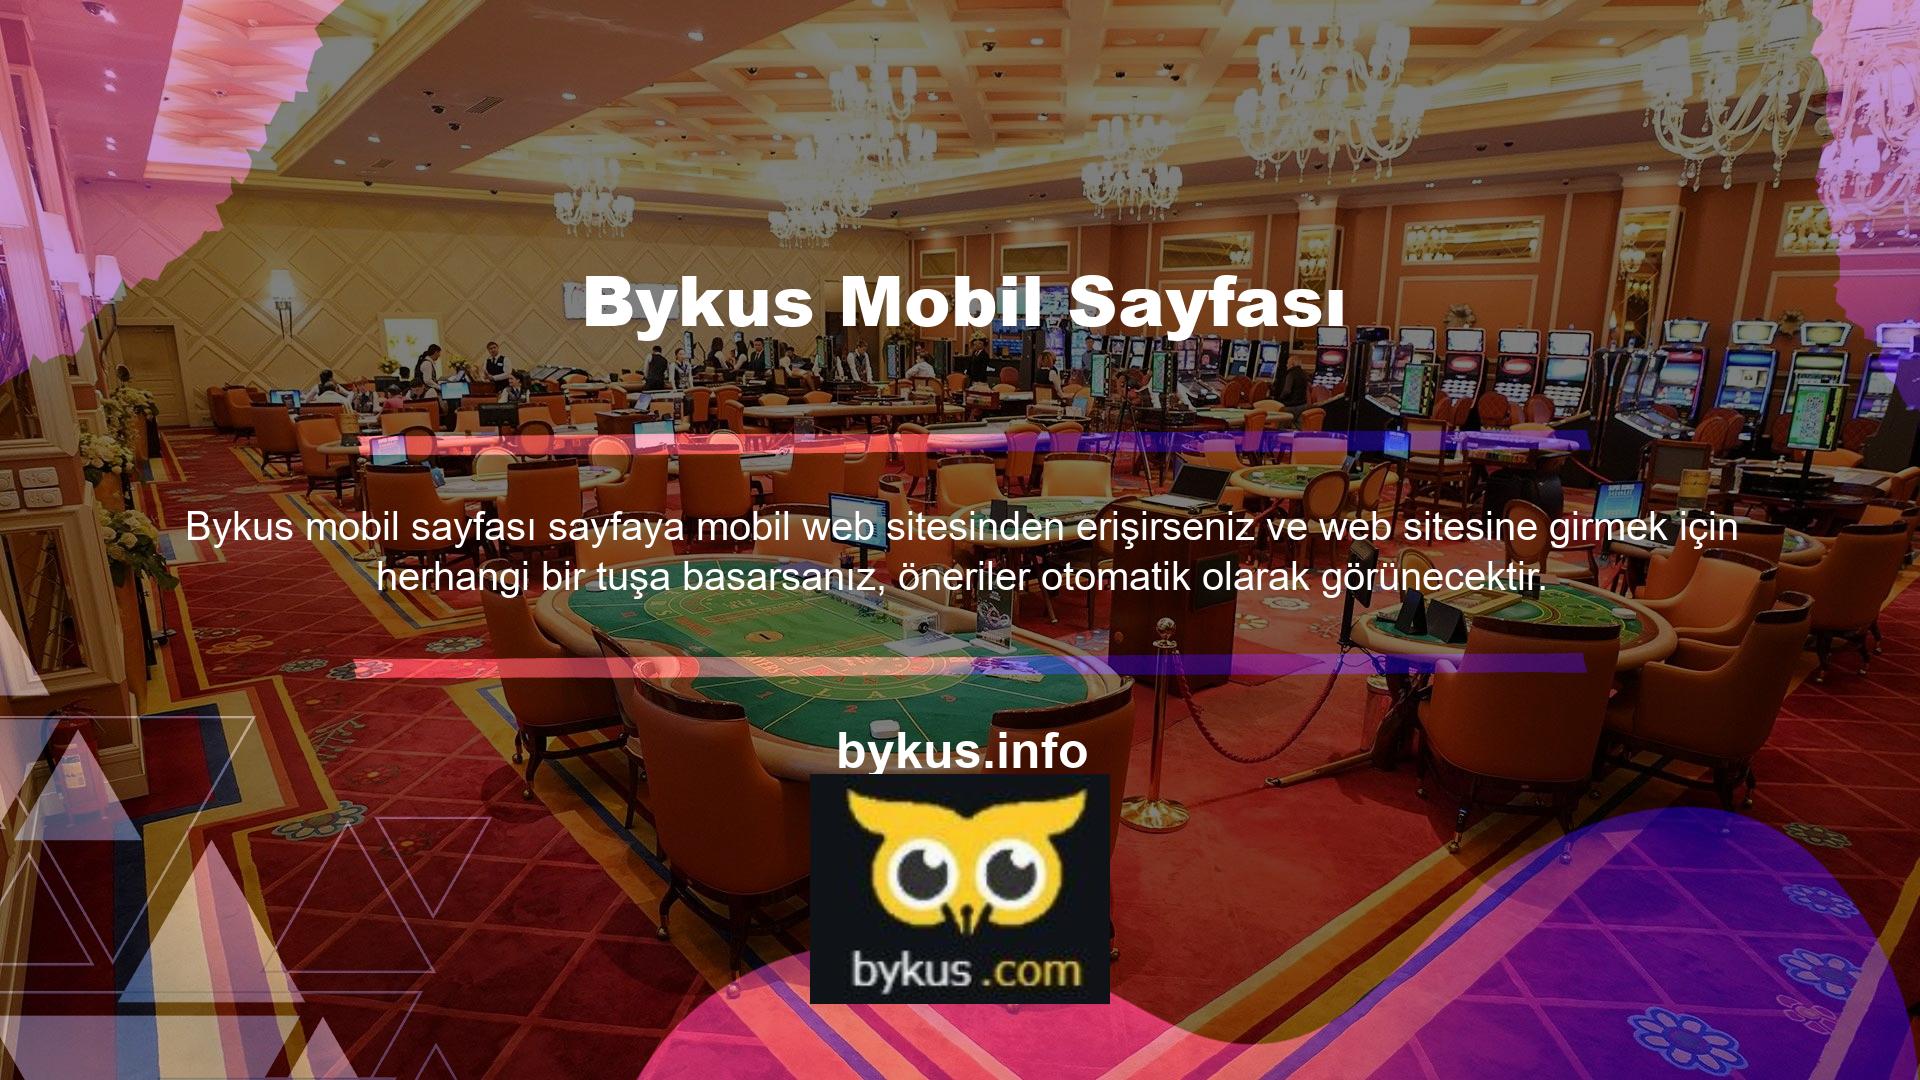 Bu web sitesi size Bykus maçlarını canlı izleme fırsatı sunuyor